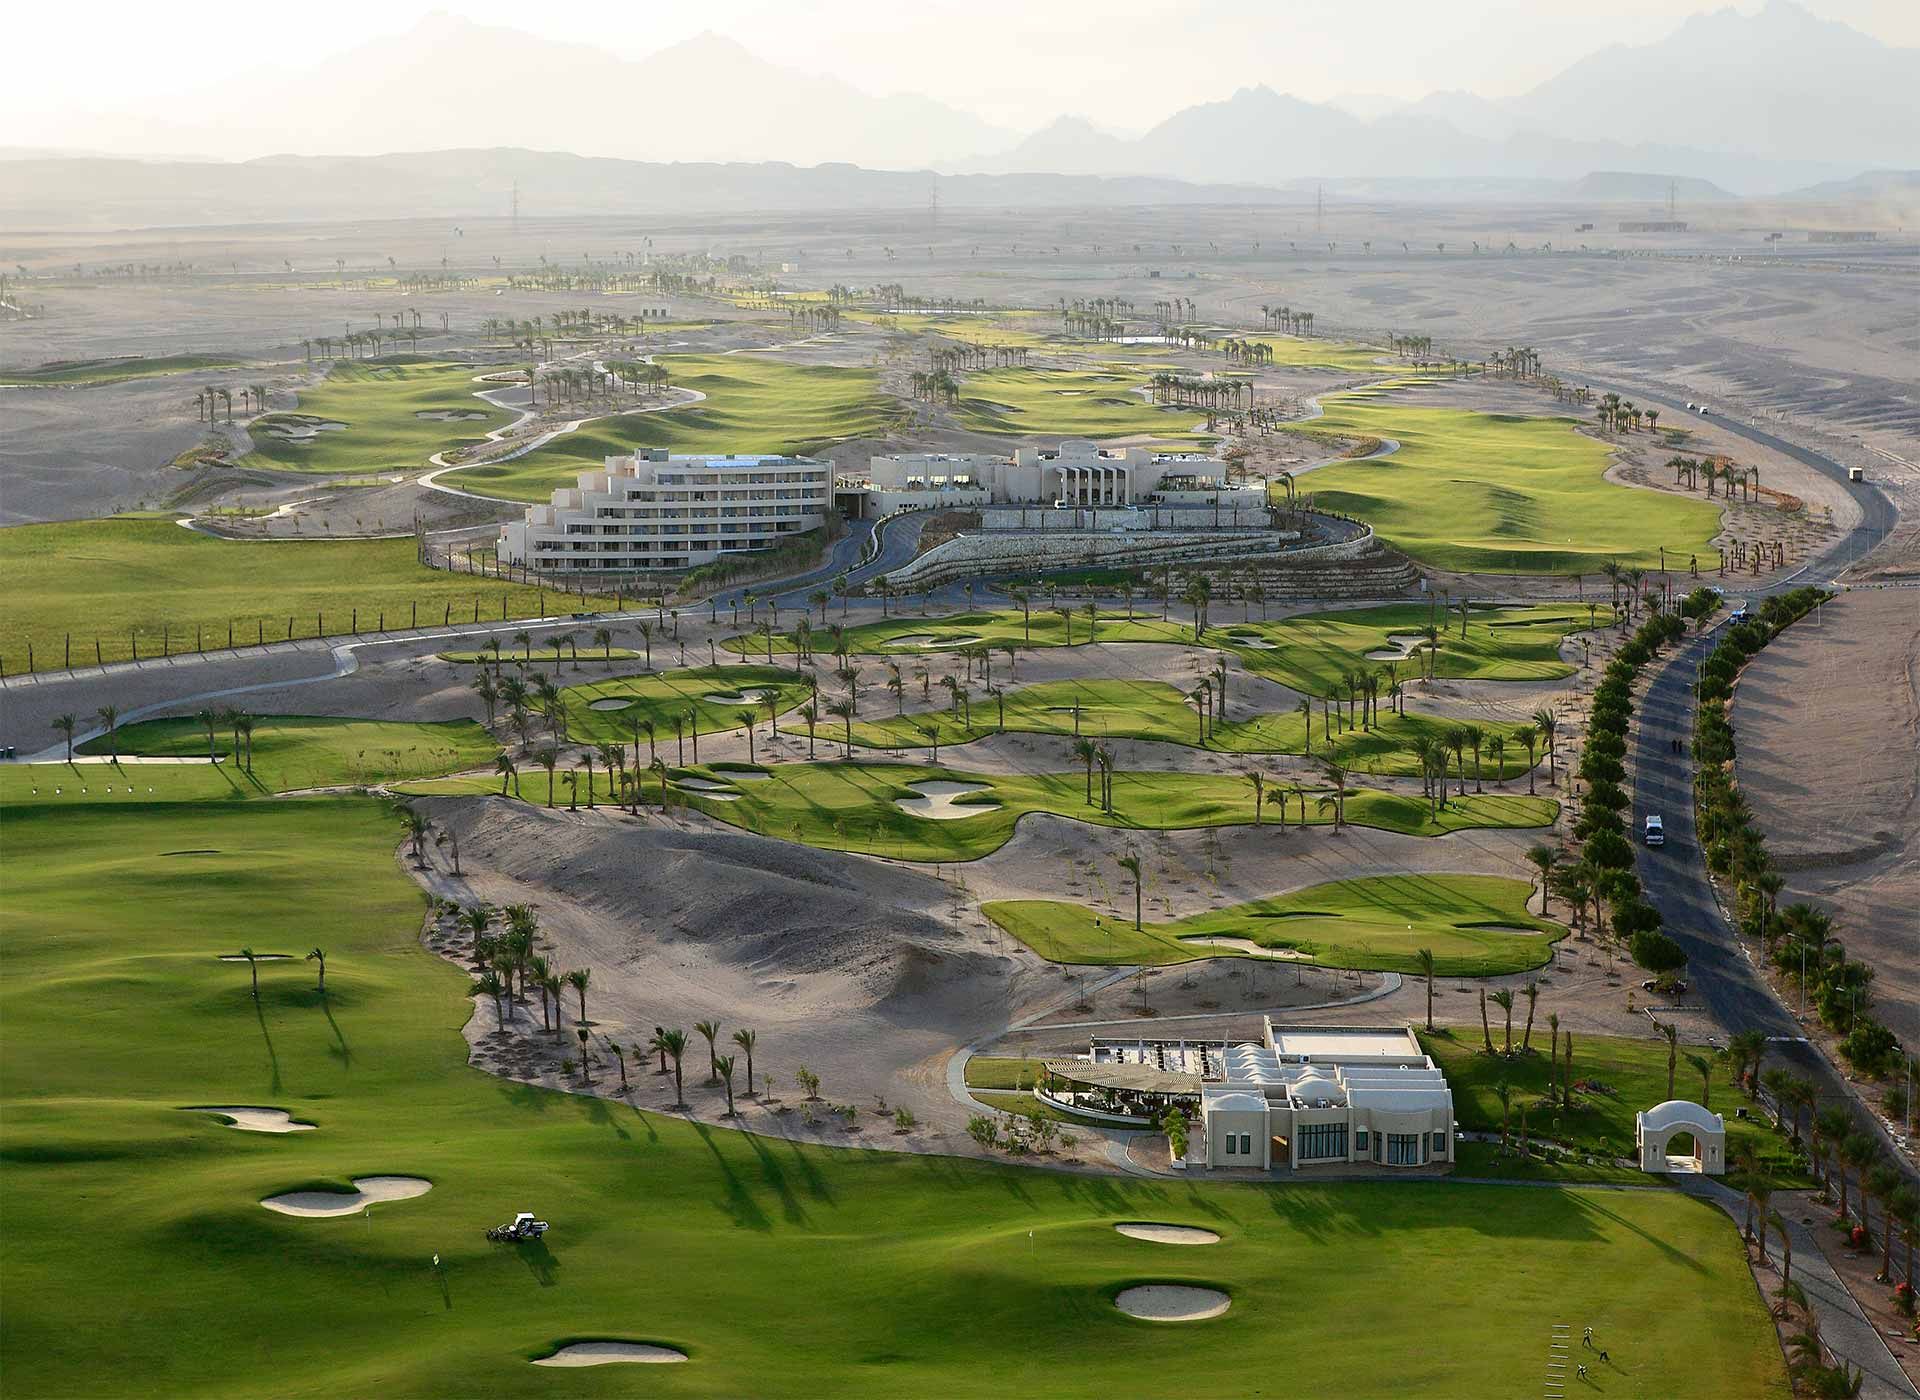 Das mehrfach ausge zeichnete Madinat Makadi Golf Resort in Ägypten mit dem 5-Sterne-Hotel Steigenberger Makadi direkt am Golfplatz